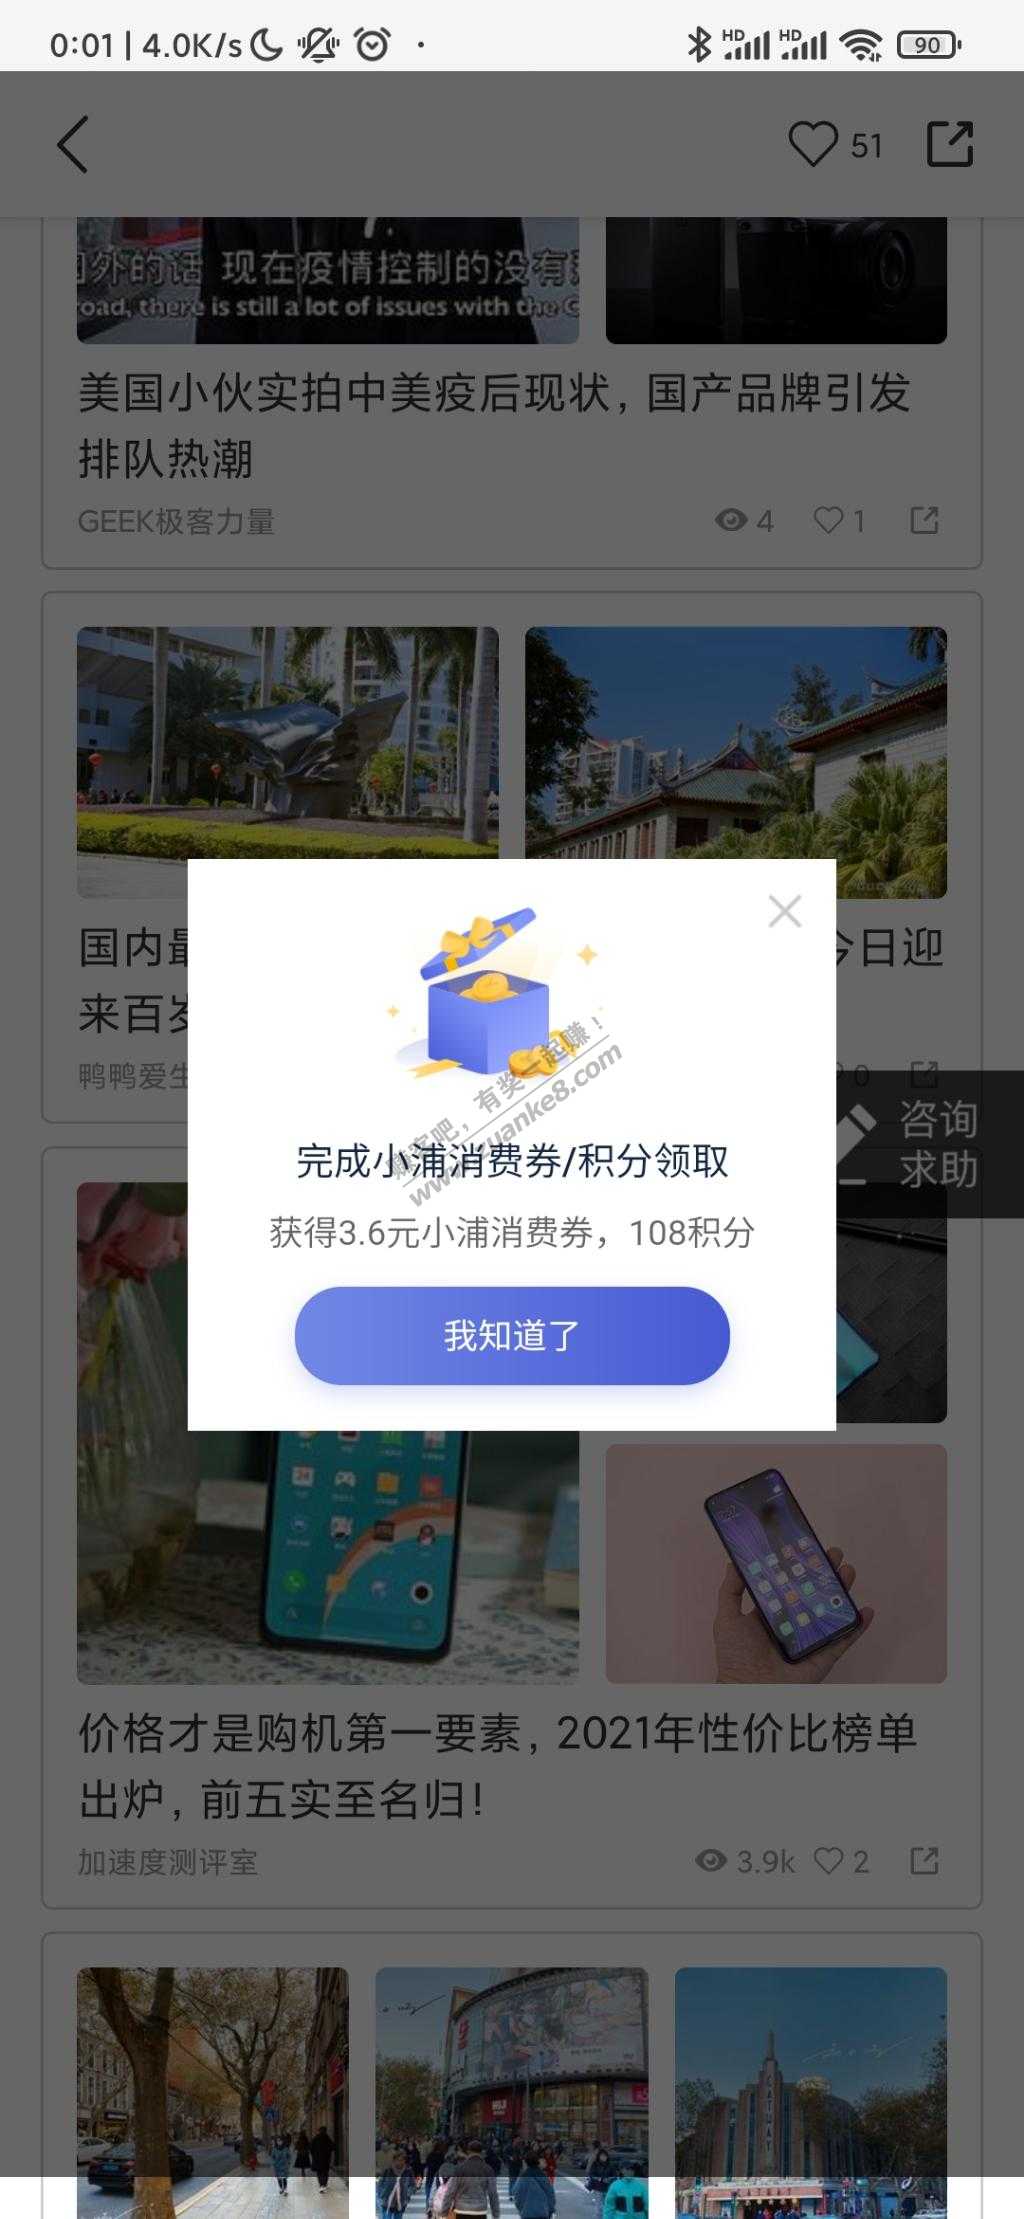 浦发银行app-打卡第4天-3.6元消费券-惠小助(52huixz.com)